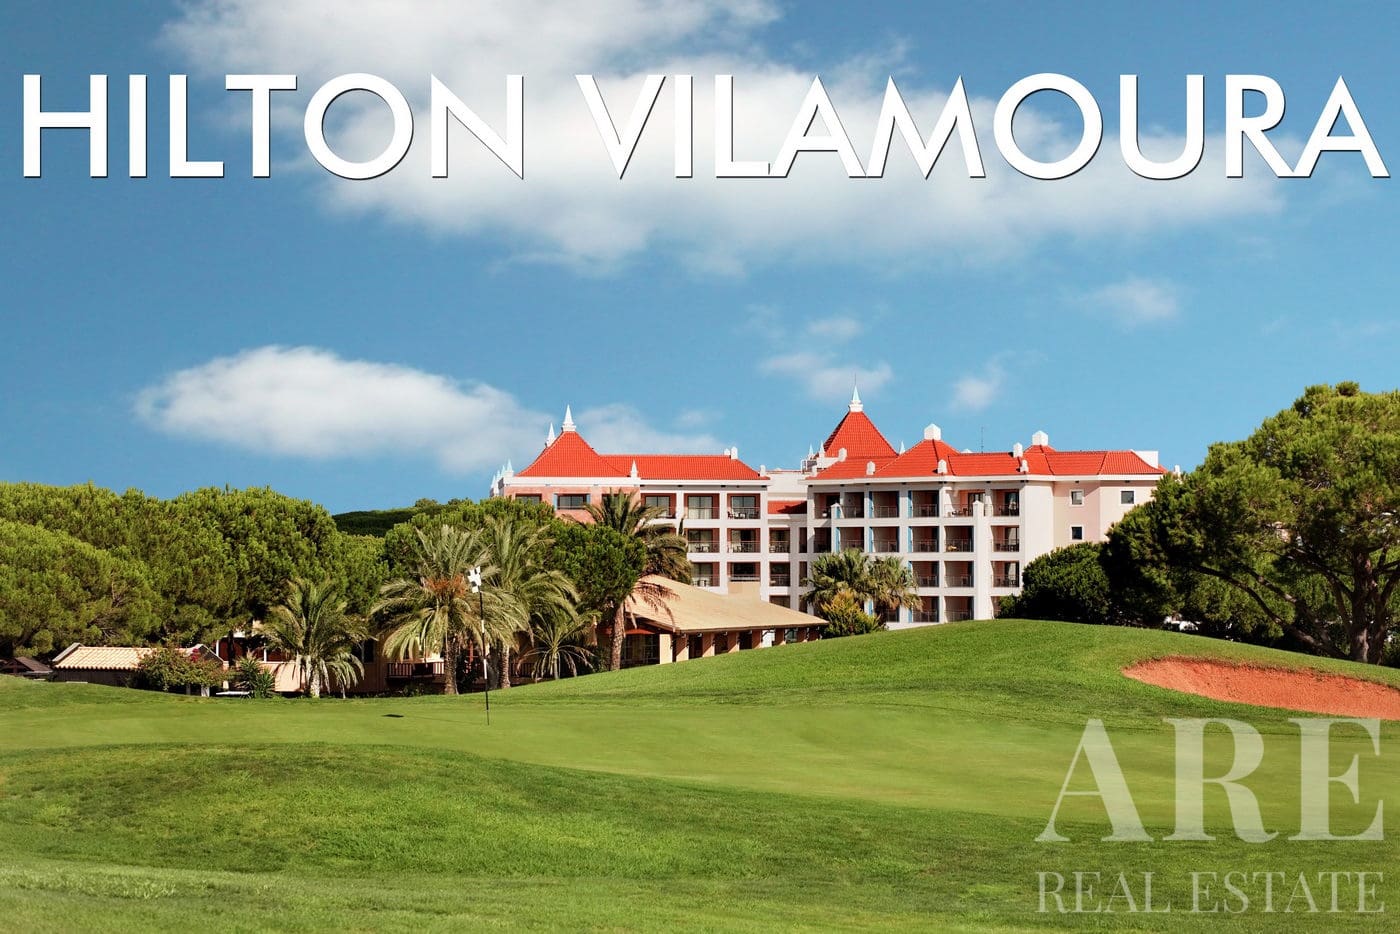 Hilton Resort condominium presentation